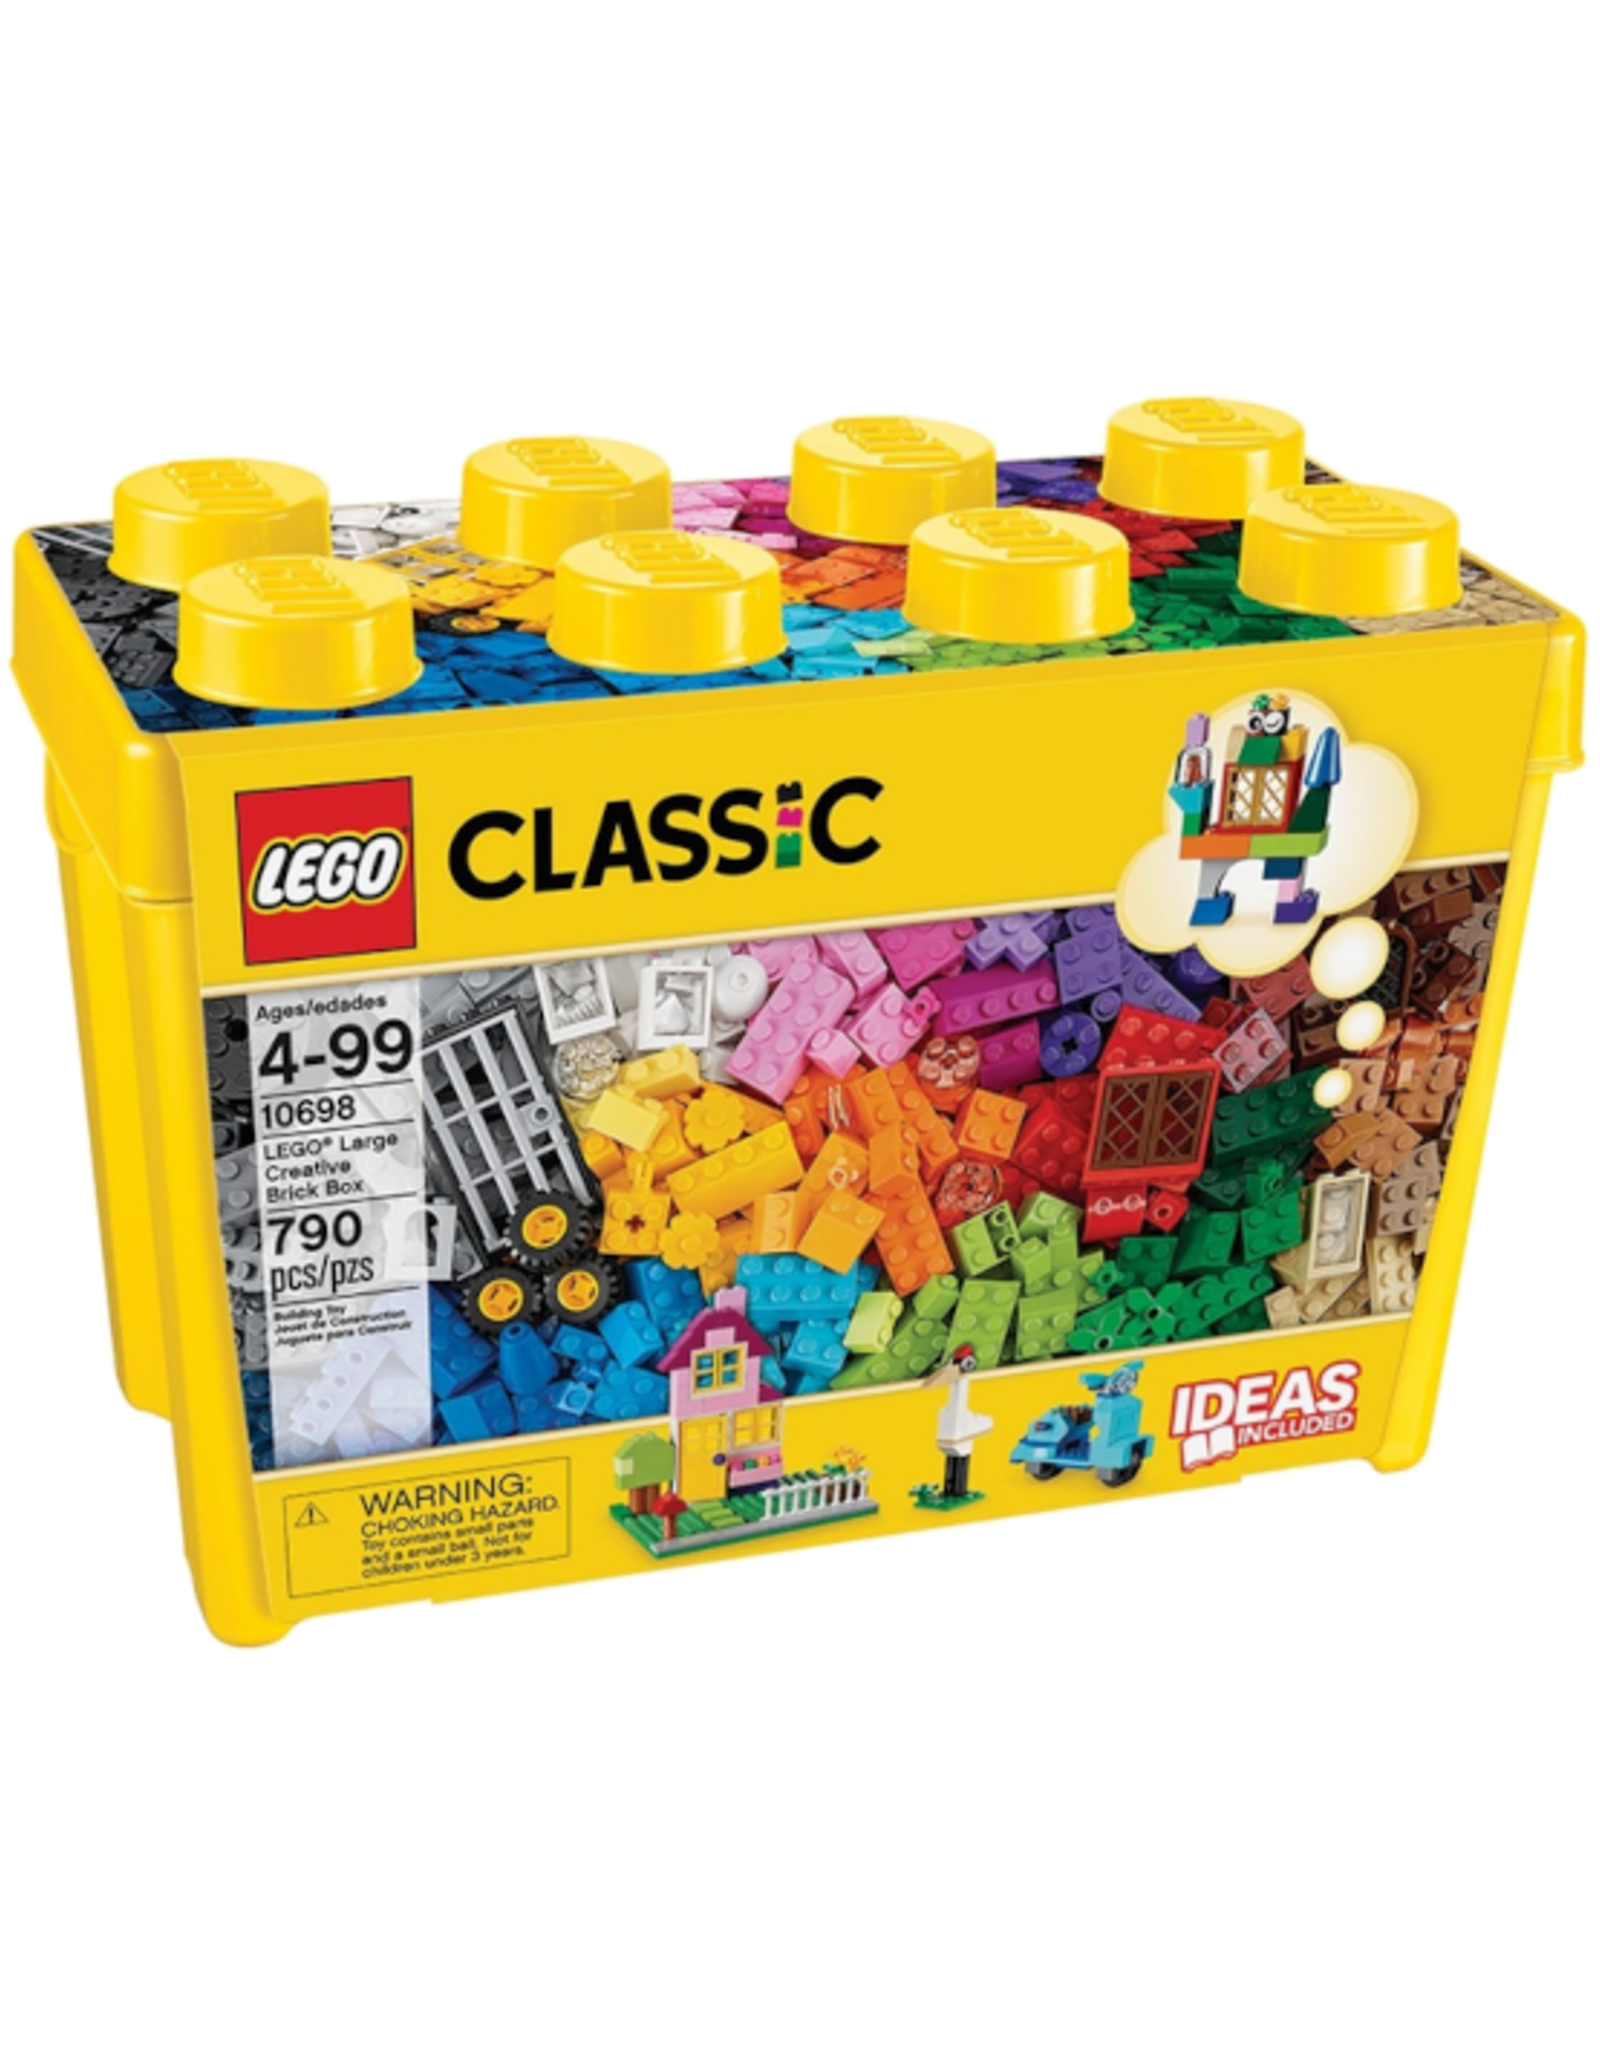 Lego Lego - Classic - 10698 - Lego Large Creative Brick Box